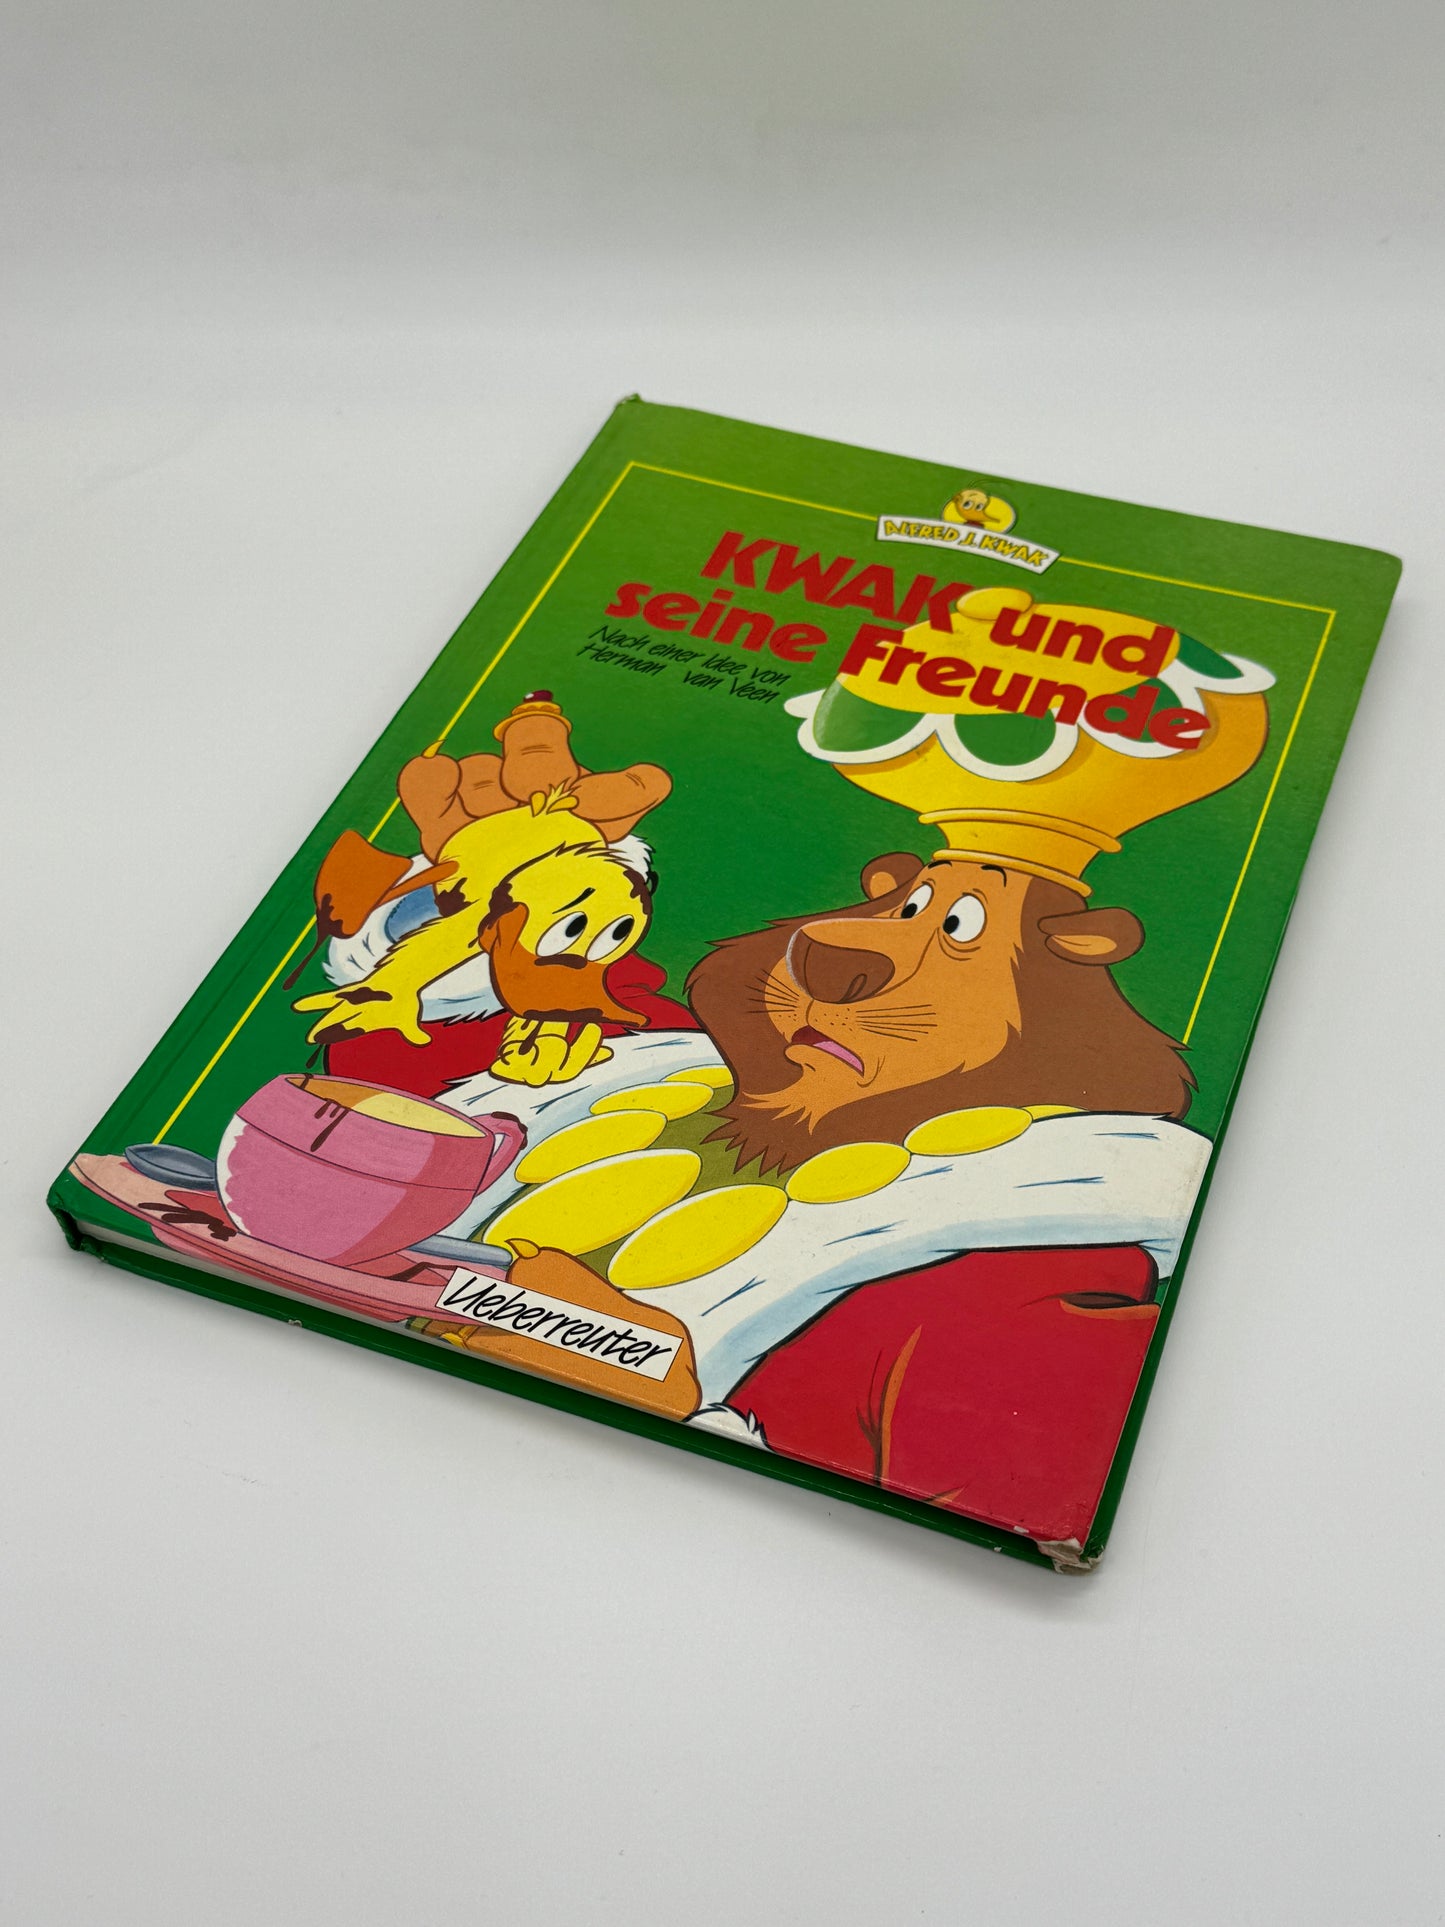 Alfred J. Kwak "Kwak und seine Freunde" Vintage Kinderbuch Ueberreuter Verlag (1990)